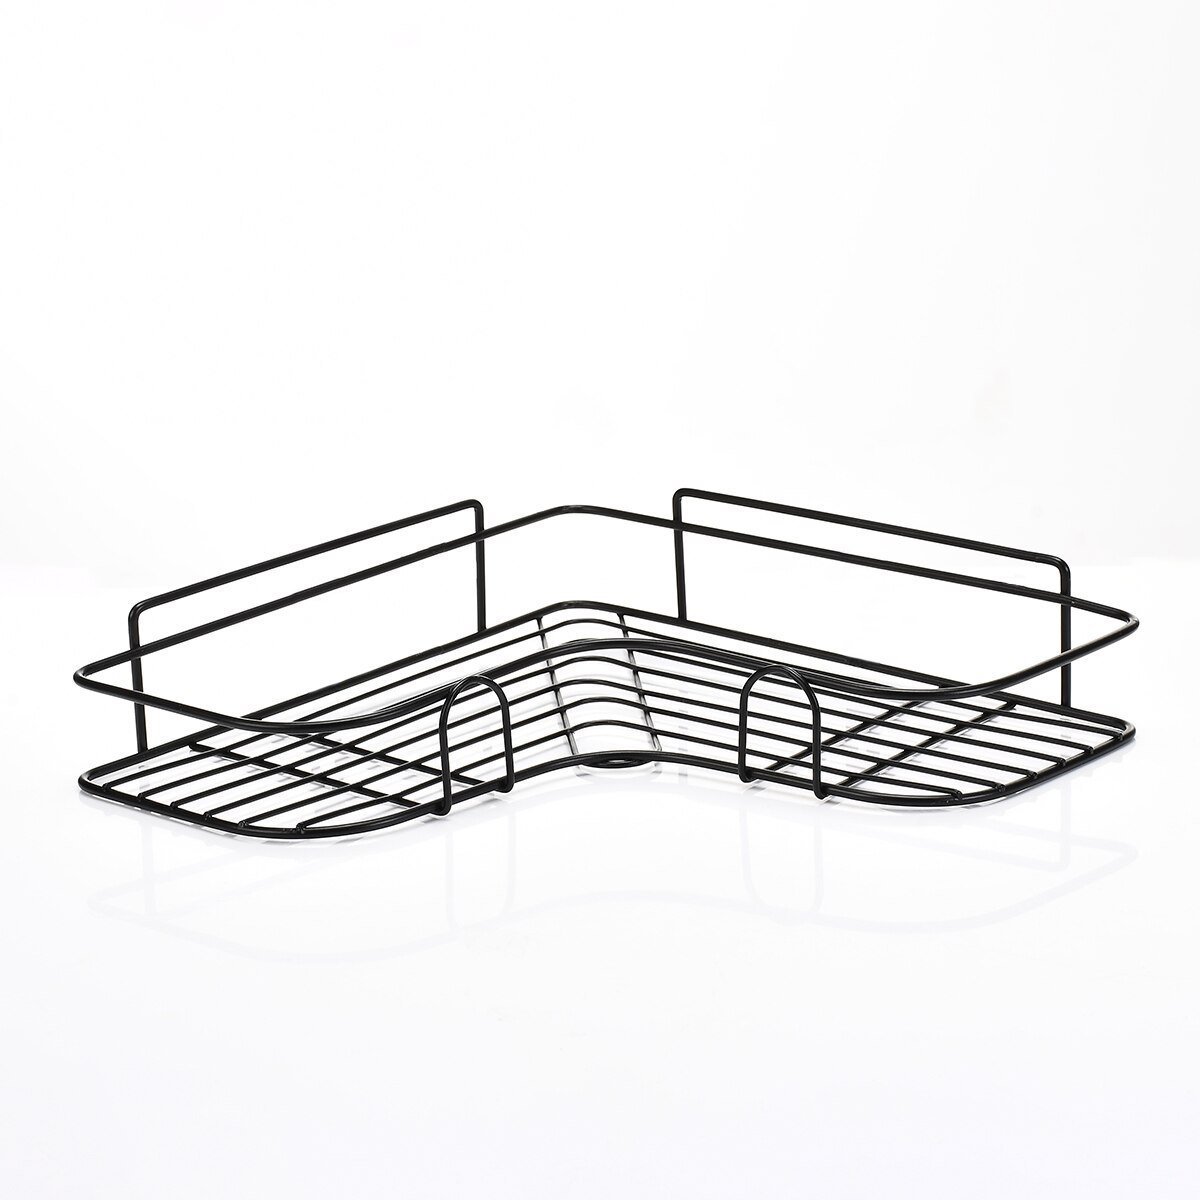 Suporte Multiuso Organizador cozinha banheiro Uso prático - Preto